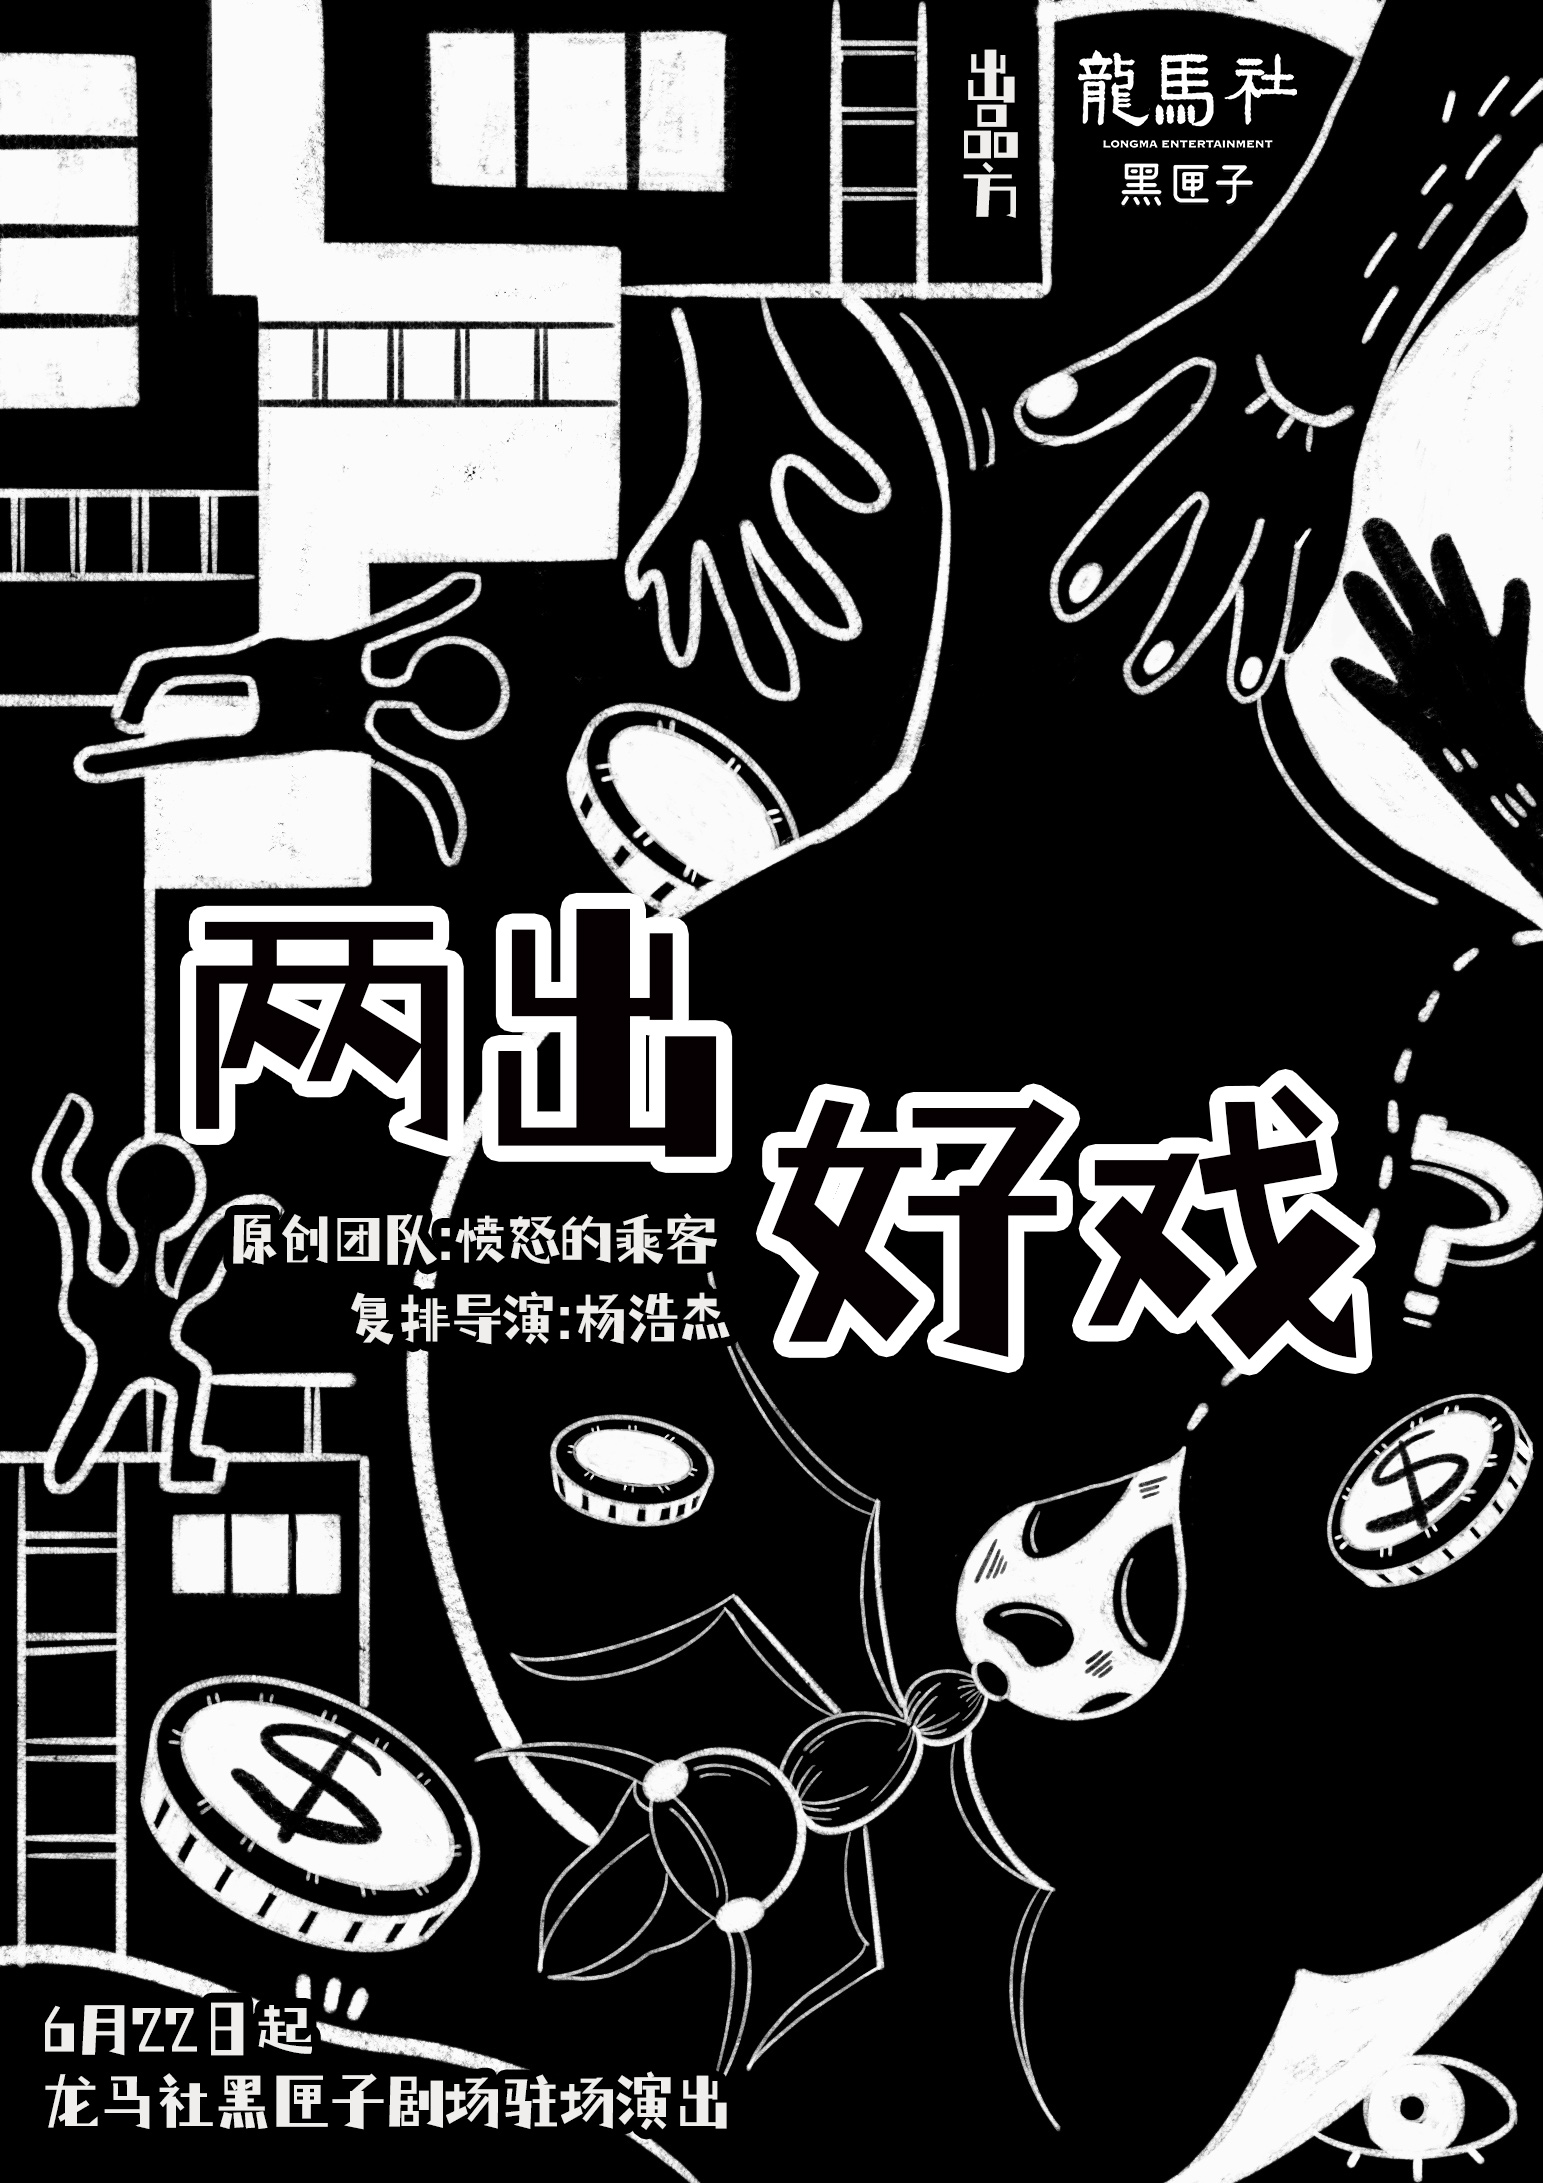 【青岛】乌镇戏剧节青年竞演获奖剧目《两出好戏》